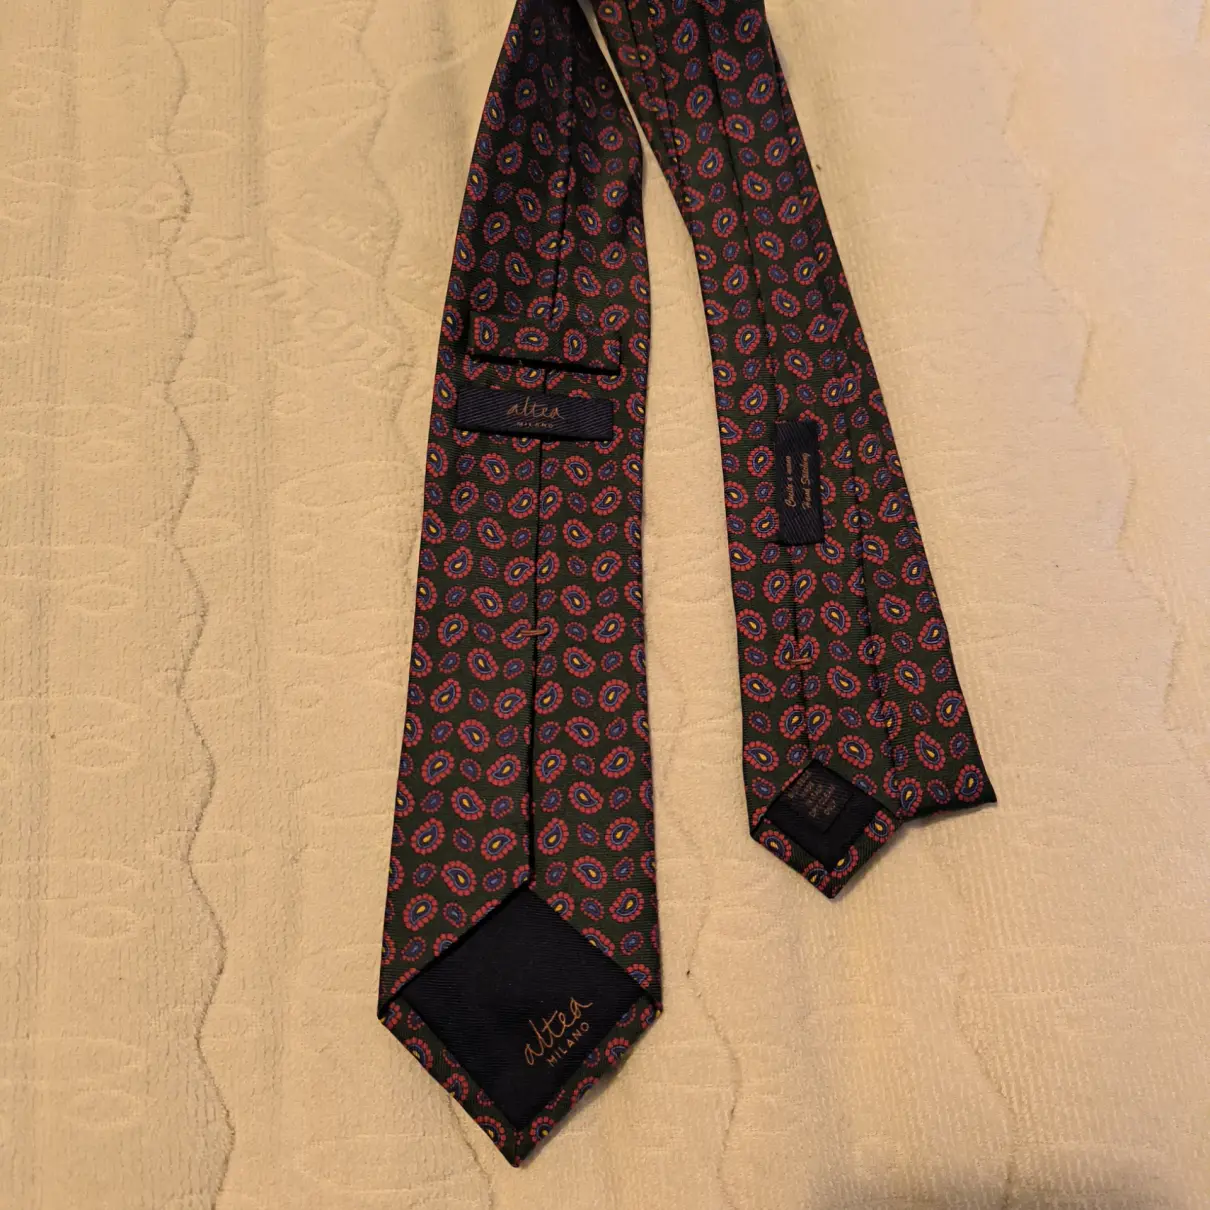 Buy Altea Silk tie online